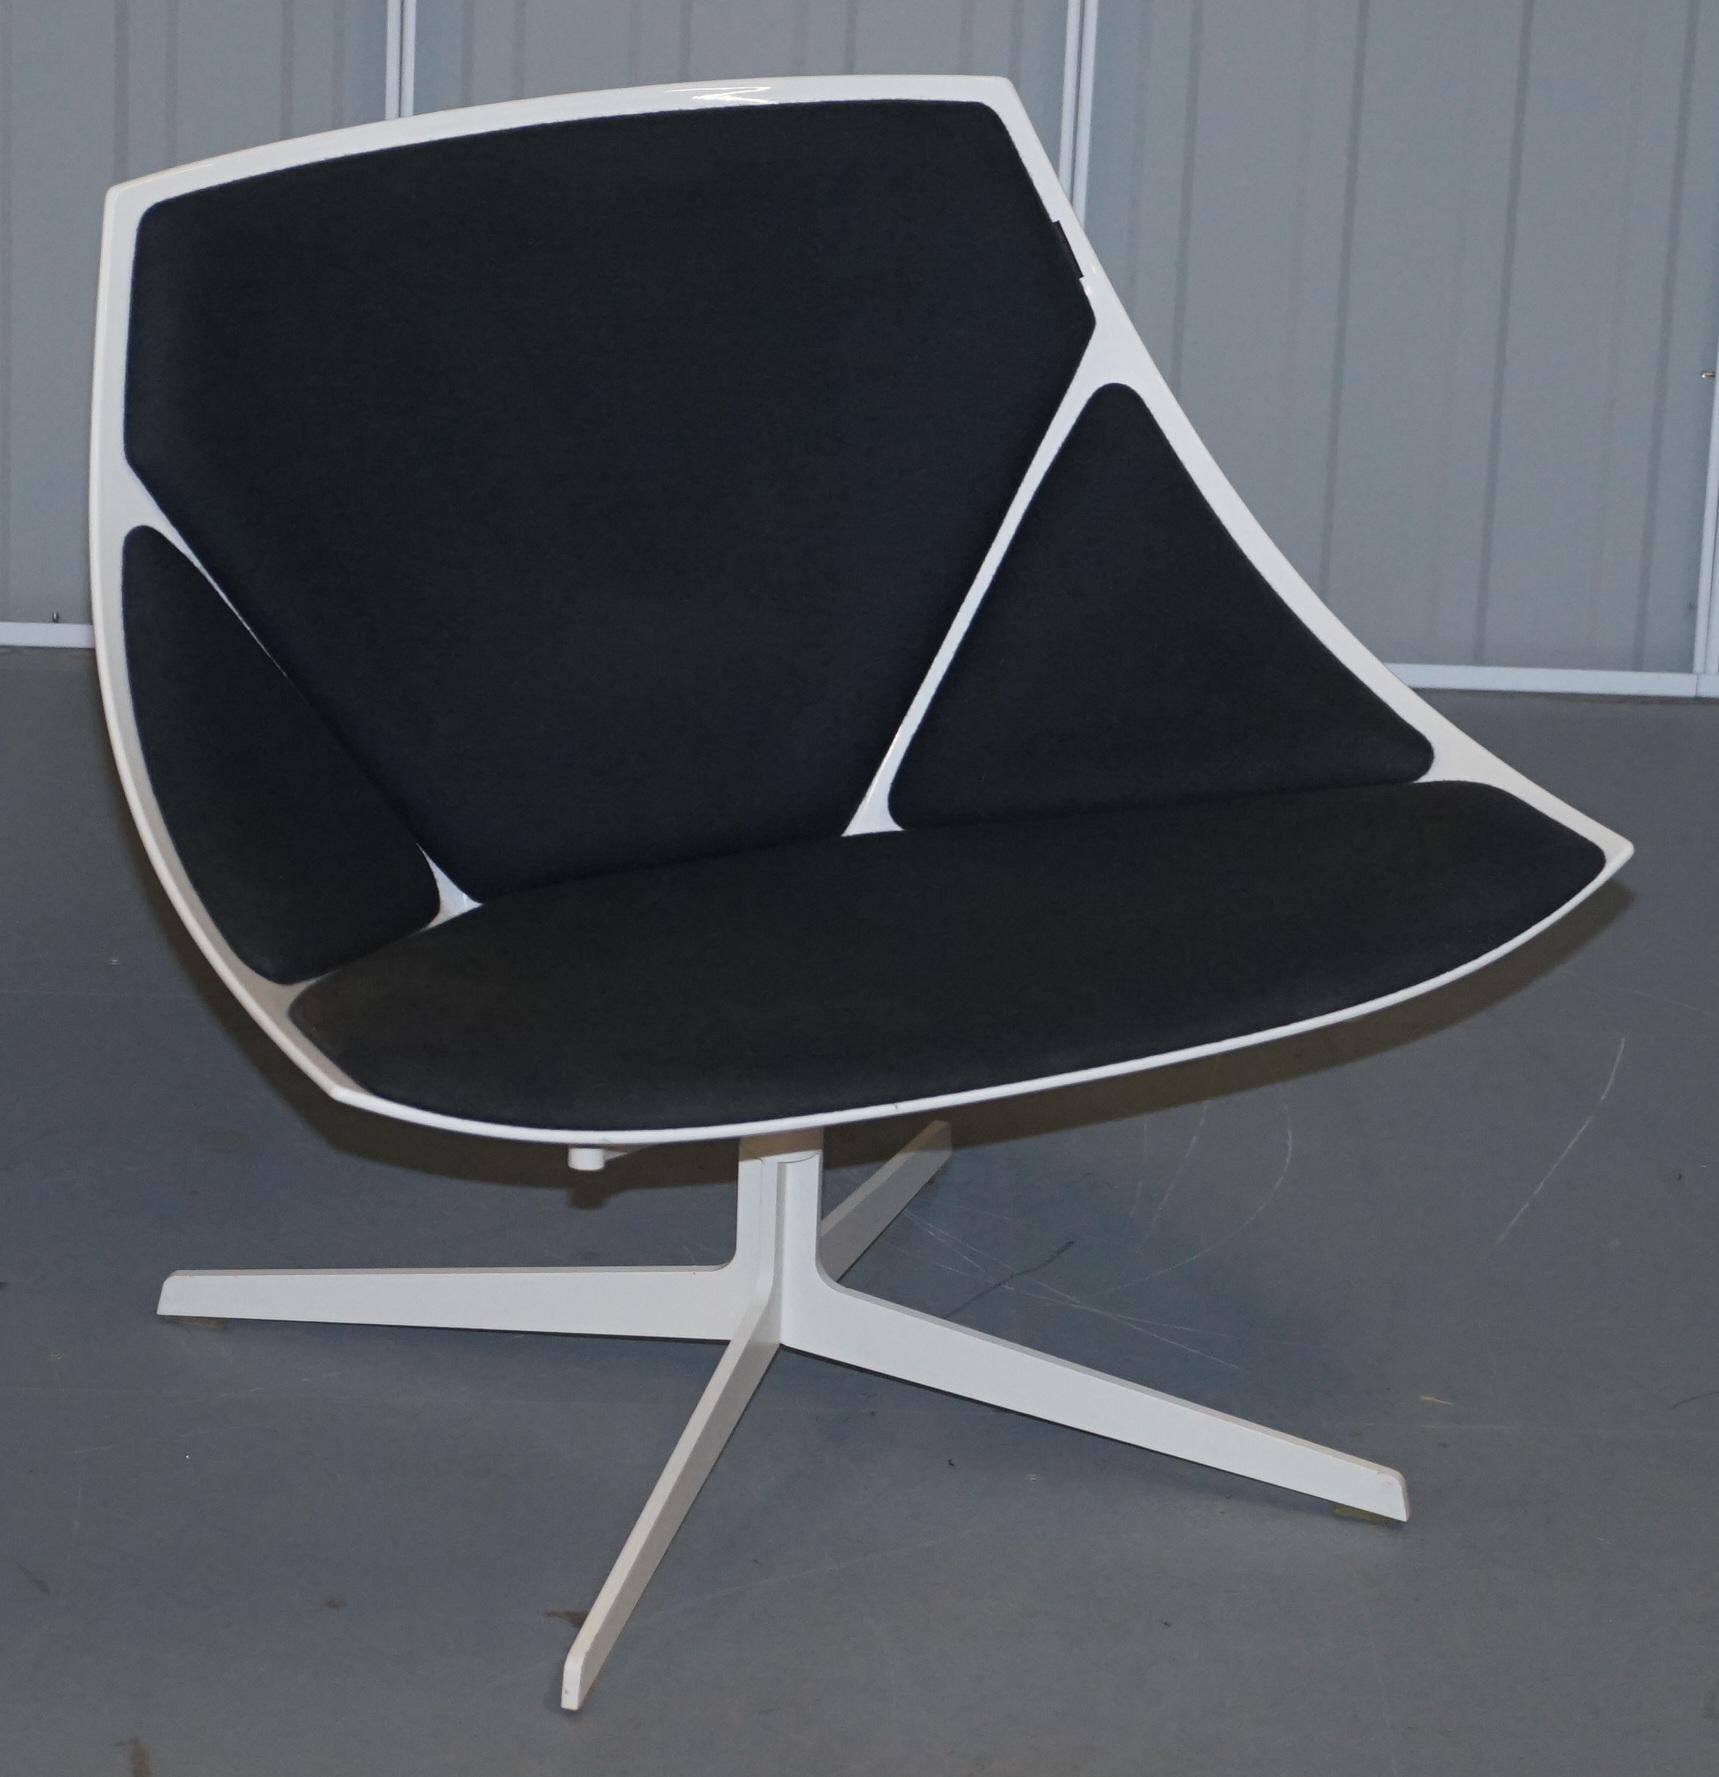 Nous avons le plaisir de vous proposer à la vente ce magnifique fauteuil Space Lounge de Fabrice Hansen à structure métallique blanche et revêtement en tissu, conçu par Jehs+Laub.

Un très beau fauteuil design et confortable réalisé par l'un des